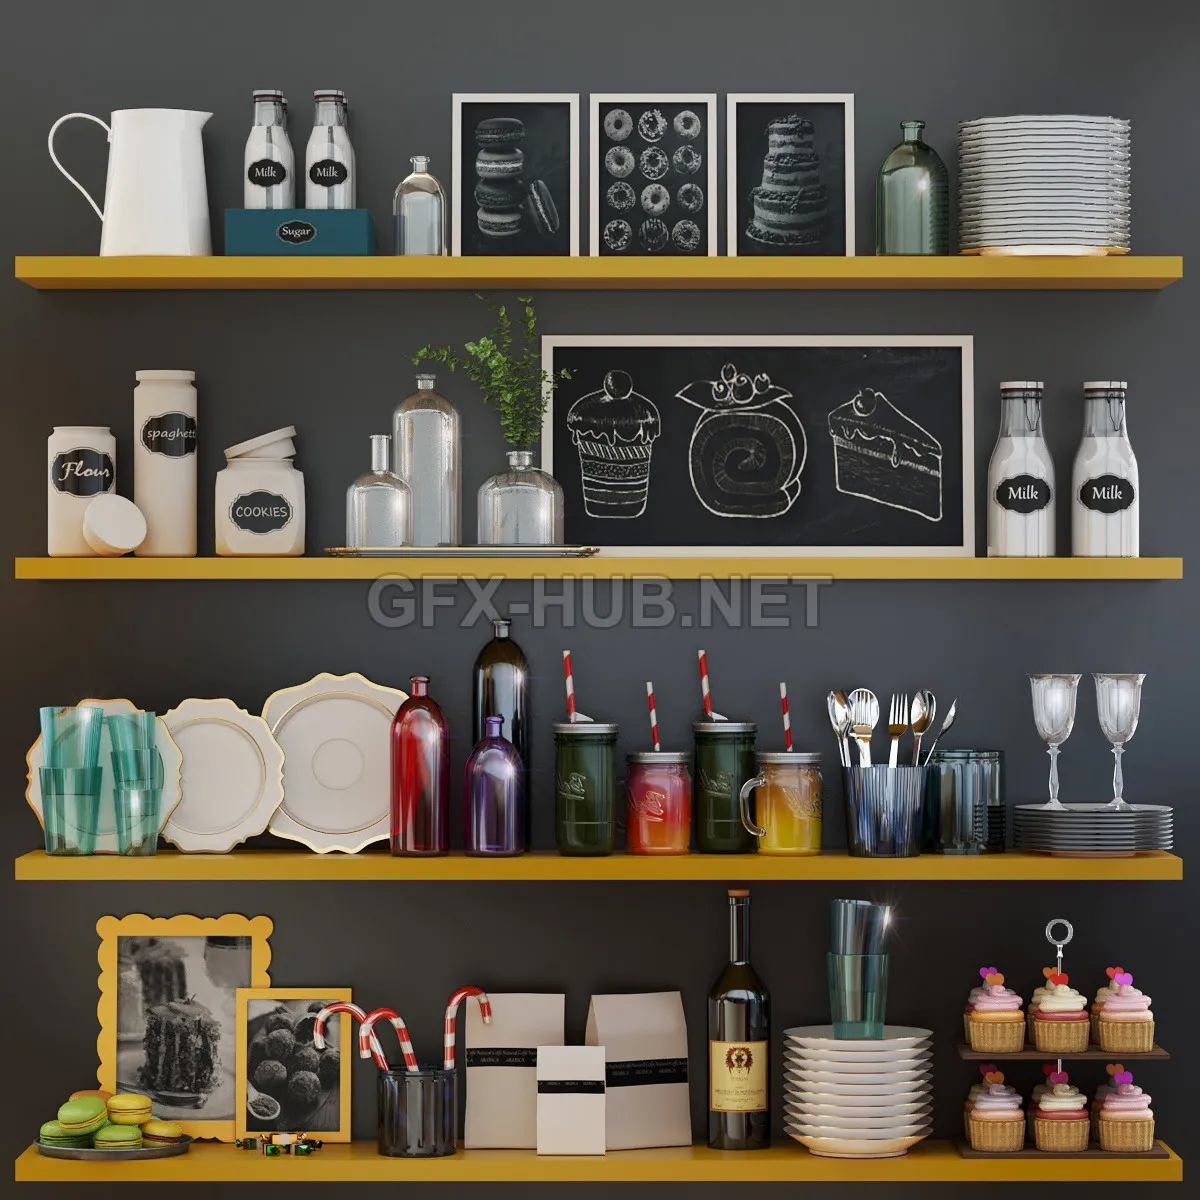 Kitchen set (max 2014, fbx) – 5137